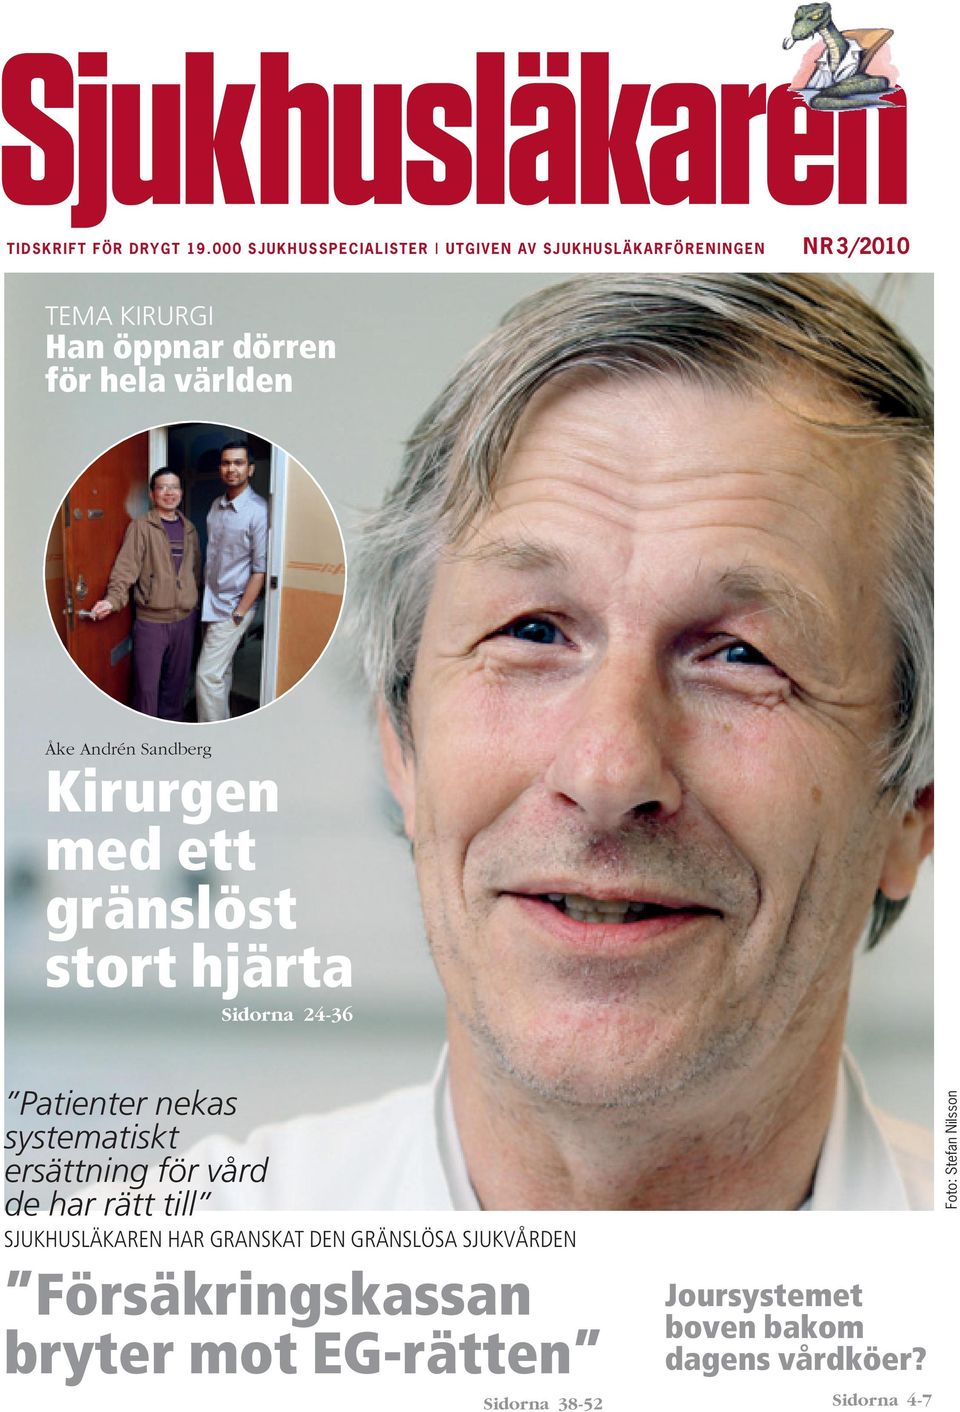 Åke Andrén Sandberg Kirurgen med ett gränslöst stort hjärta Patienter nekas systematiskt ersättning för vård de